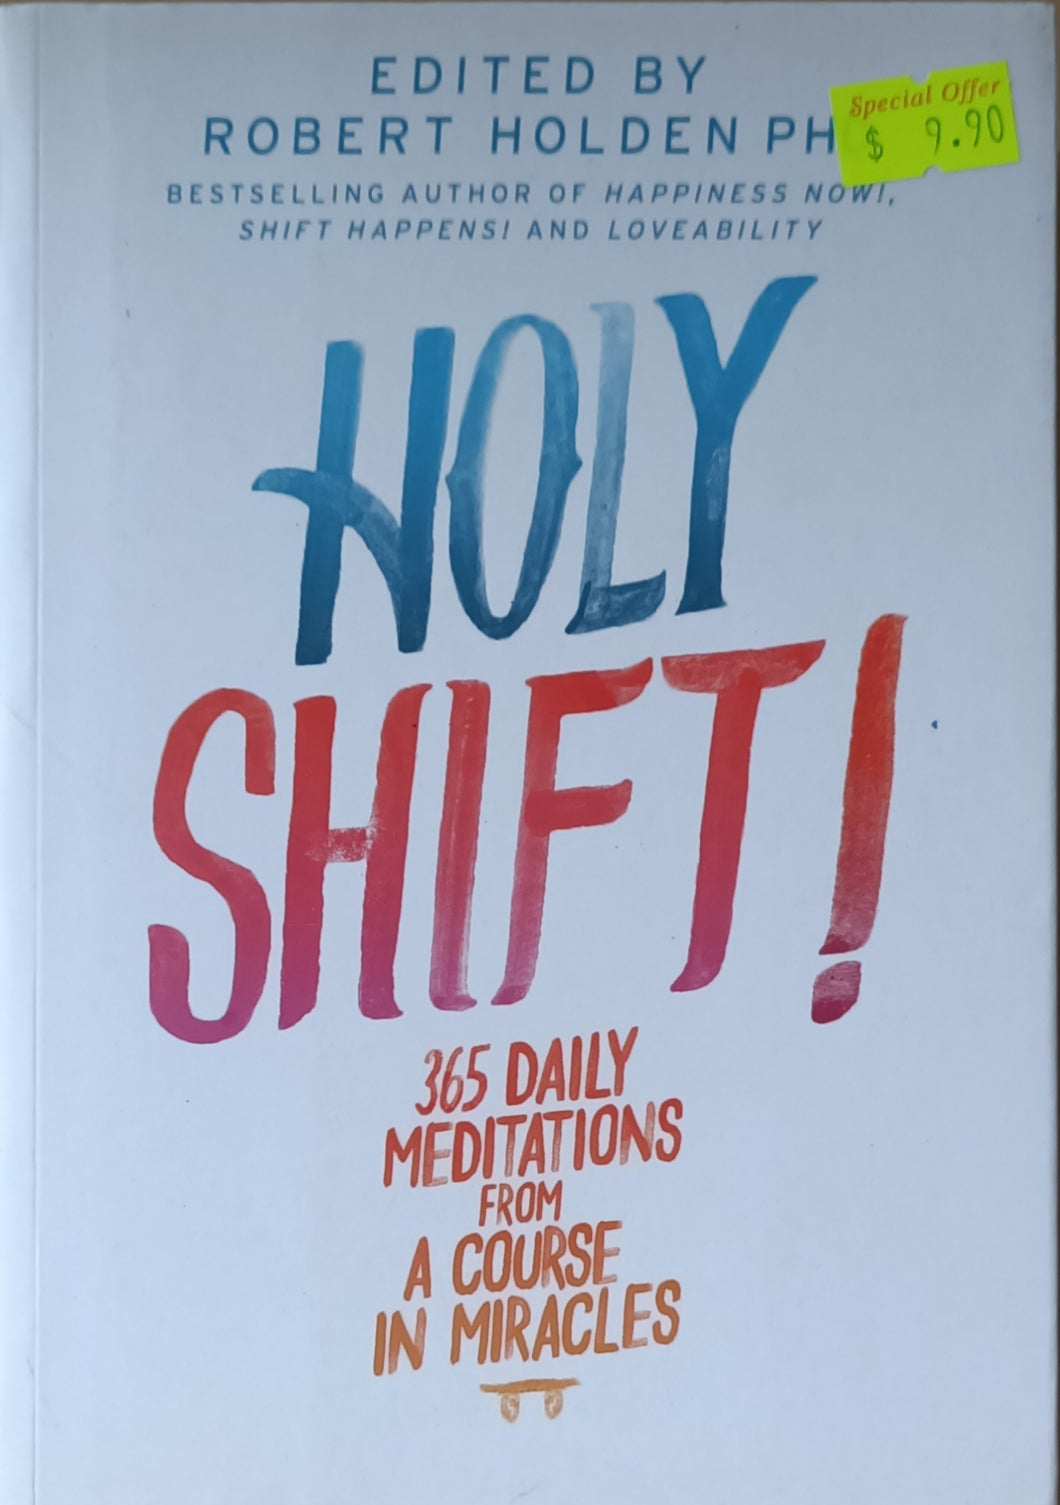 Holy Shift! - Robert Holden